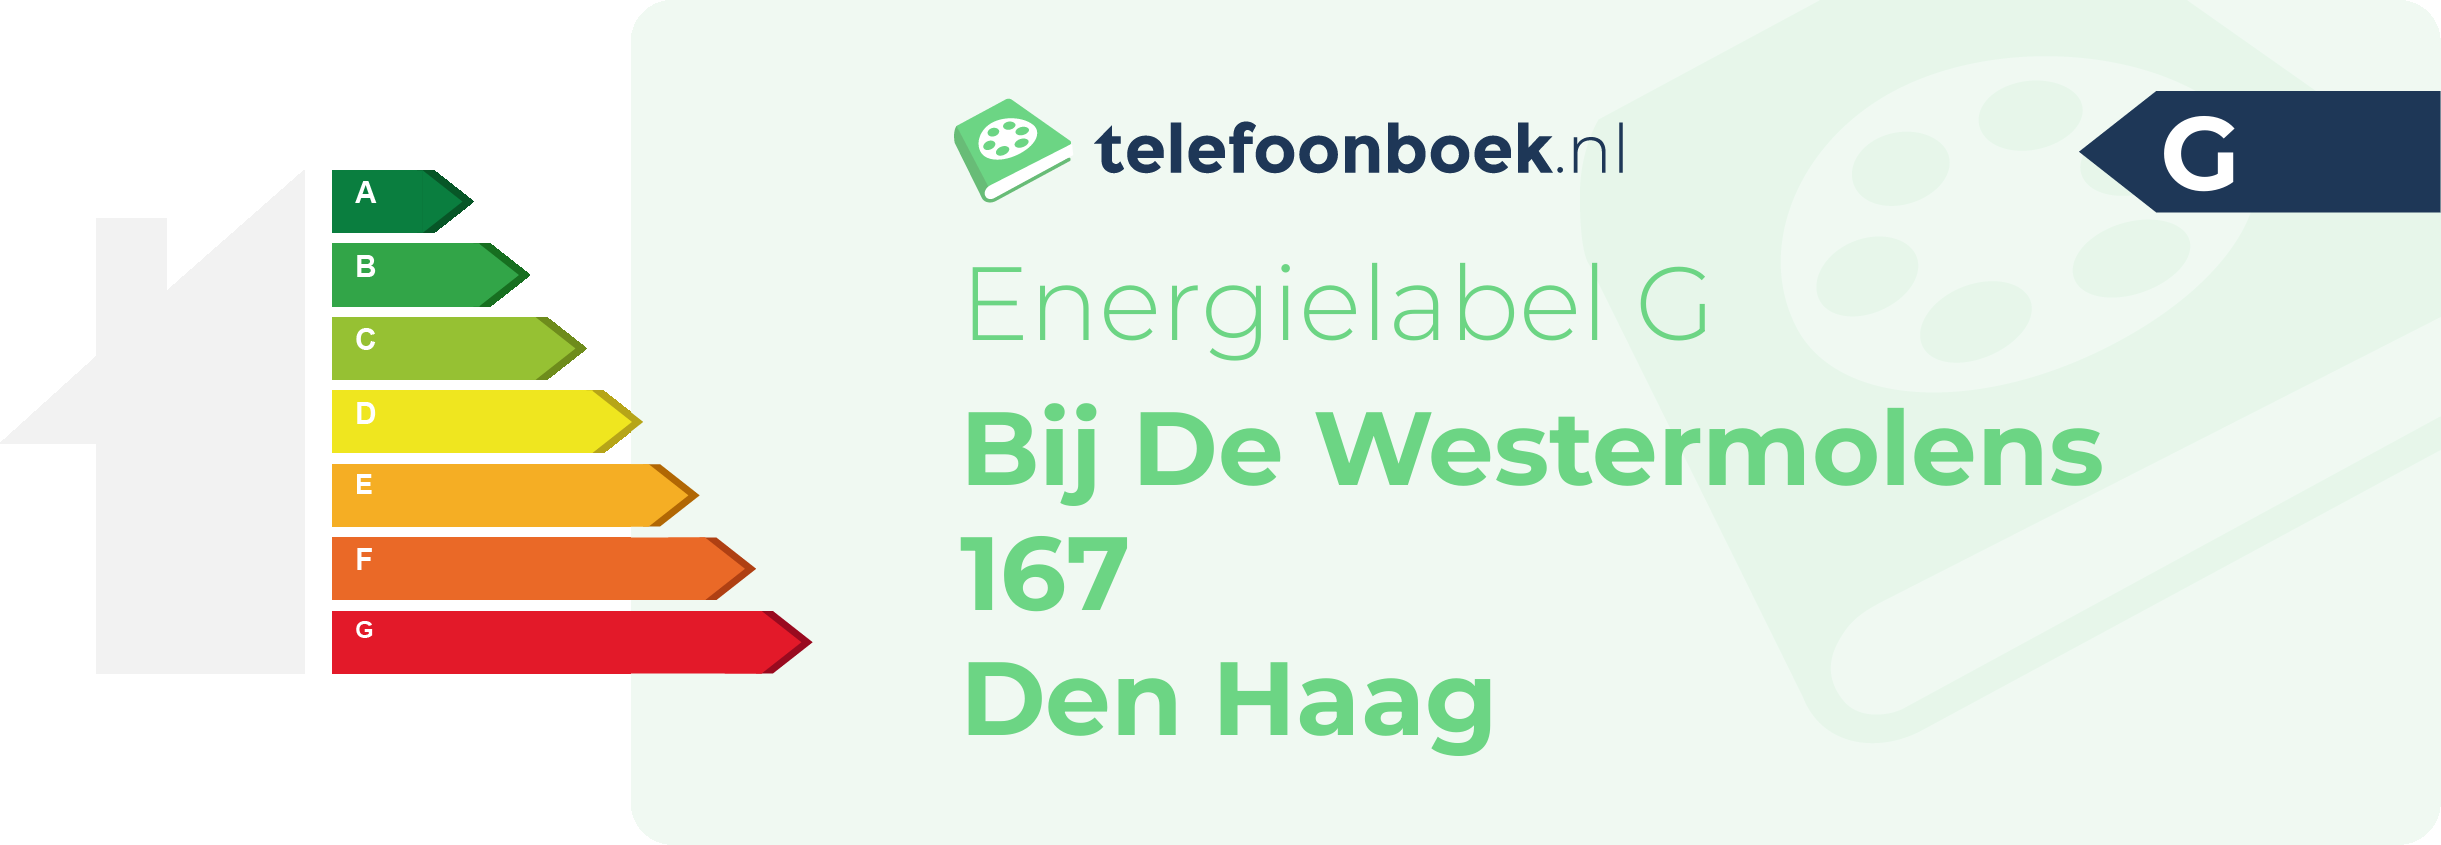 Energielabel Bij De Westermolens 167 Den Haag